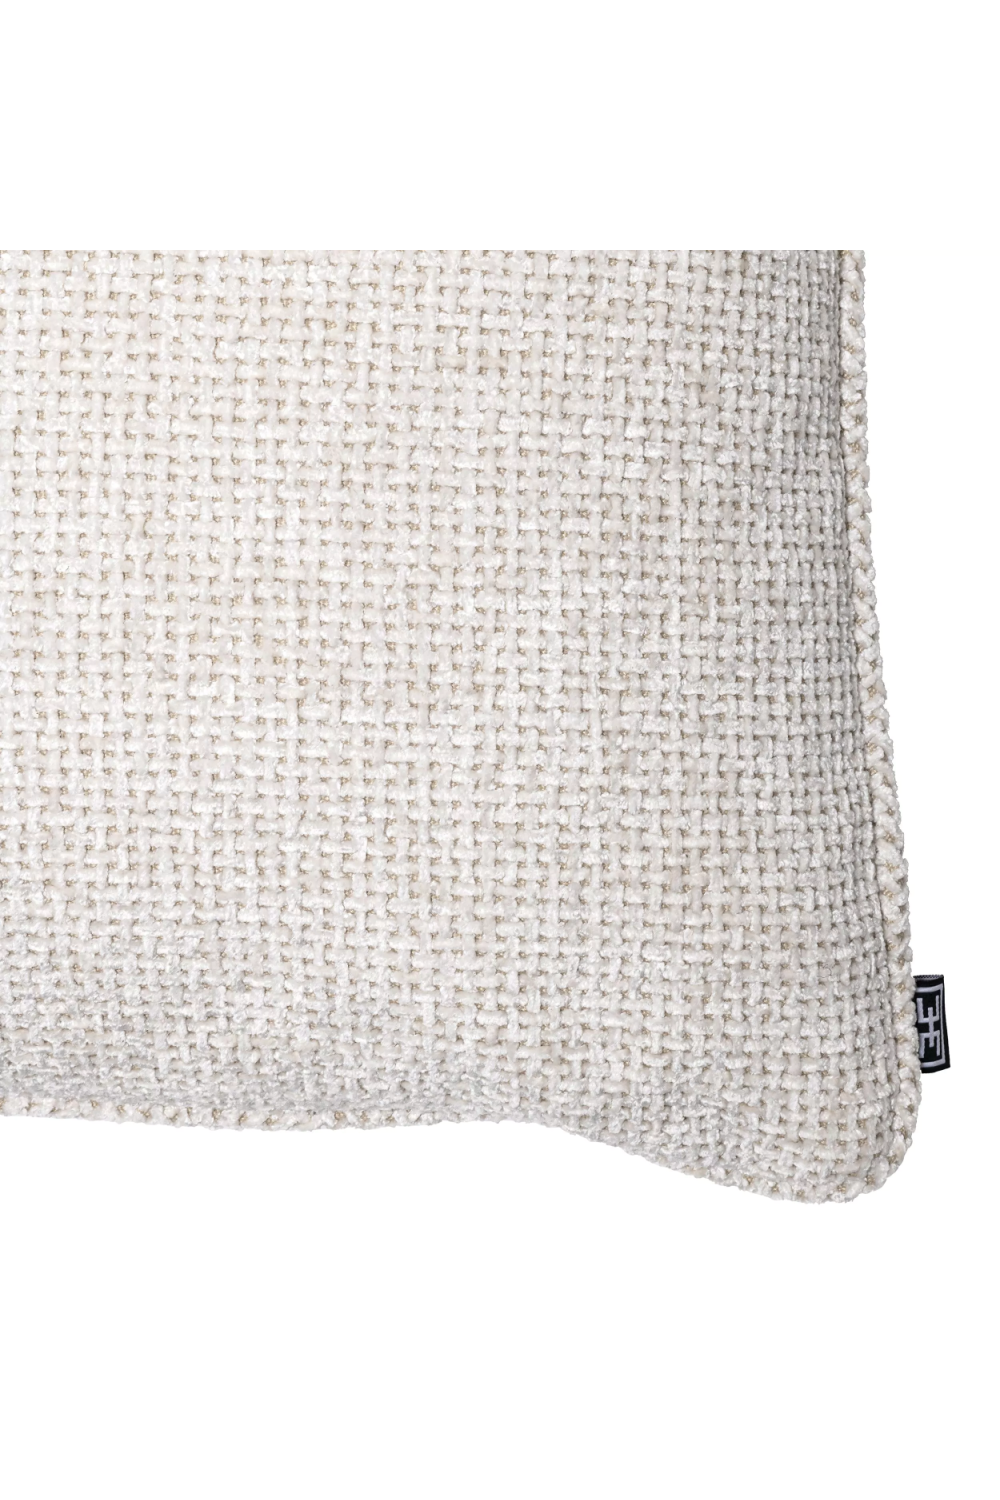 White Modern Throw Pillow | Eichholtz Lyssa | Oroa.com